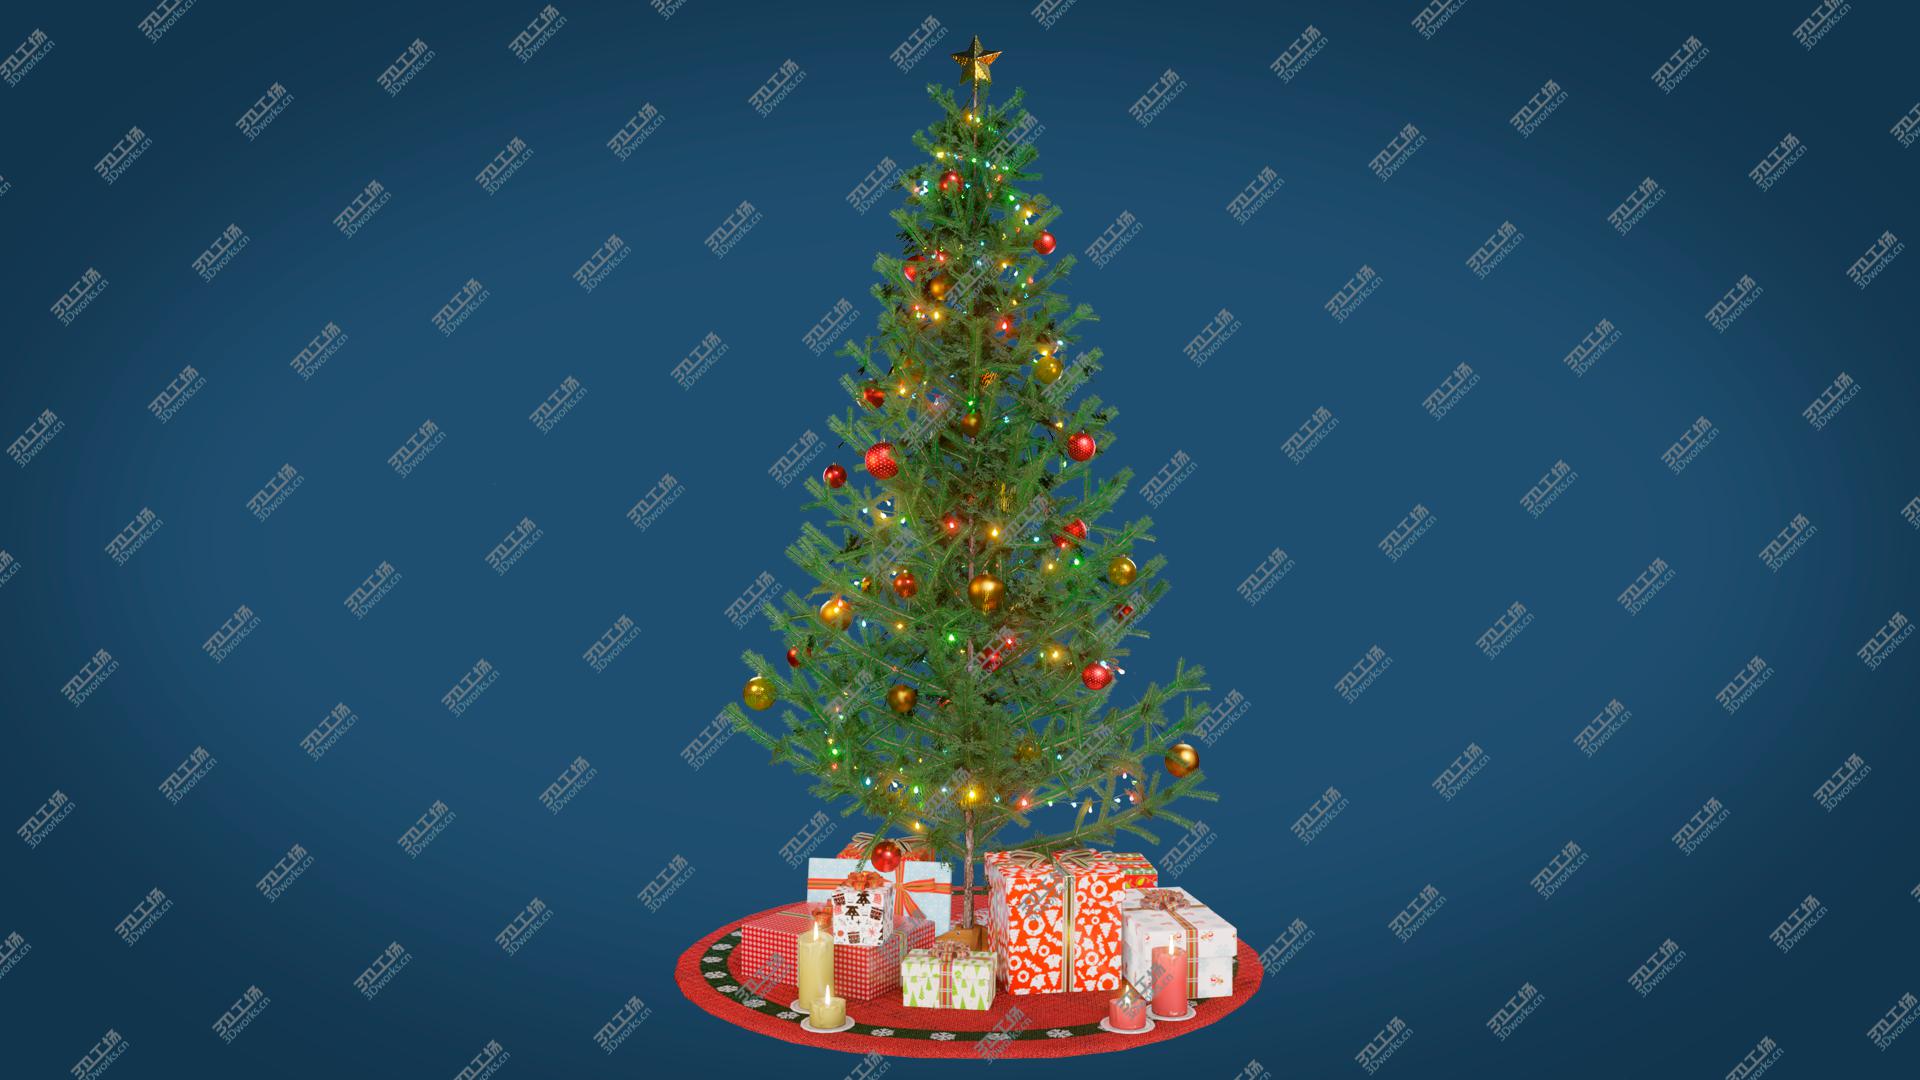 images/goods_img/2021040161/Christmas Tree GameReady LODs model/1.jpg